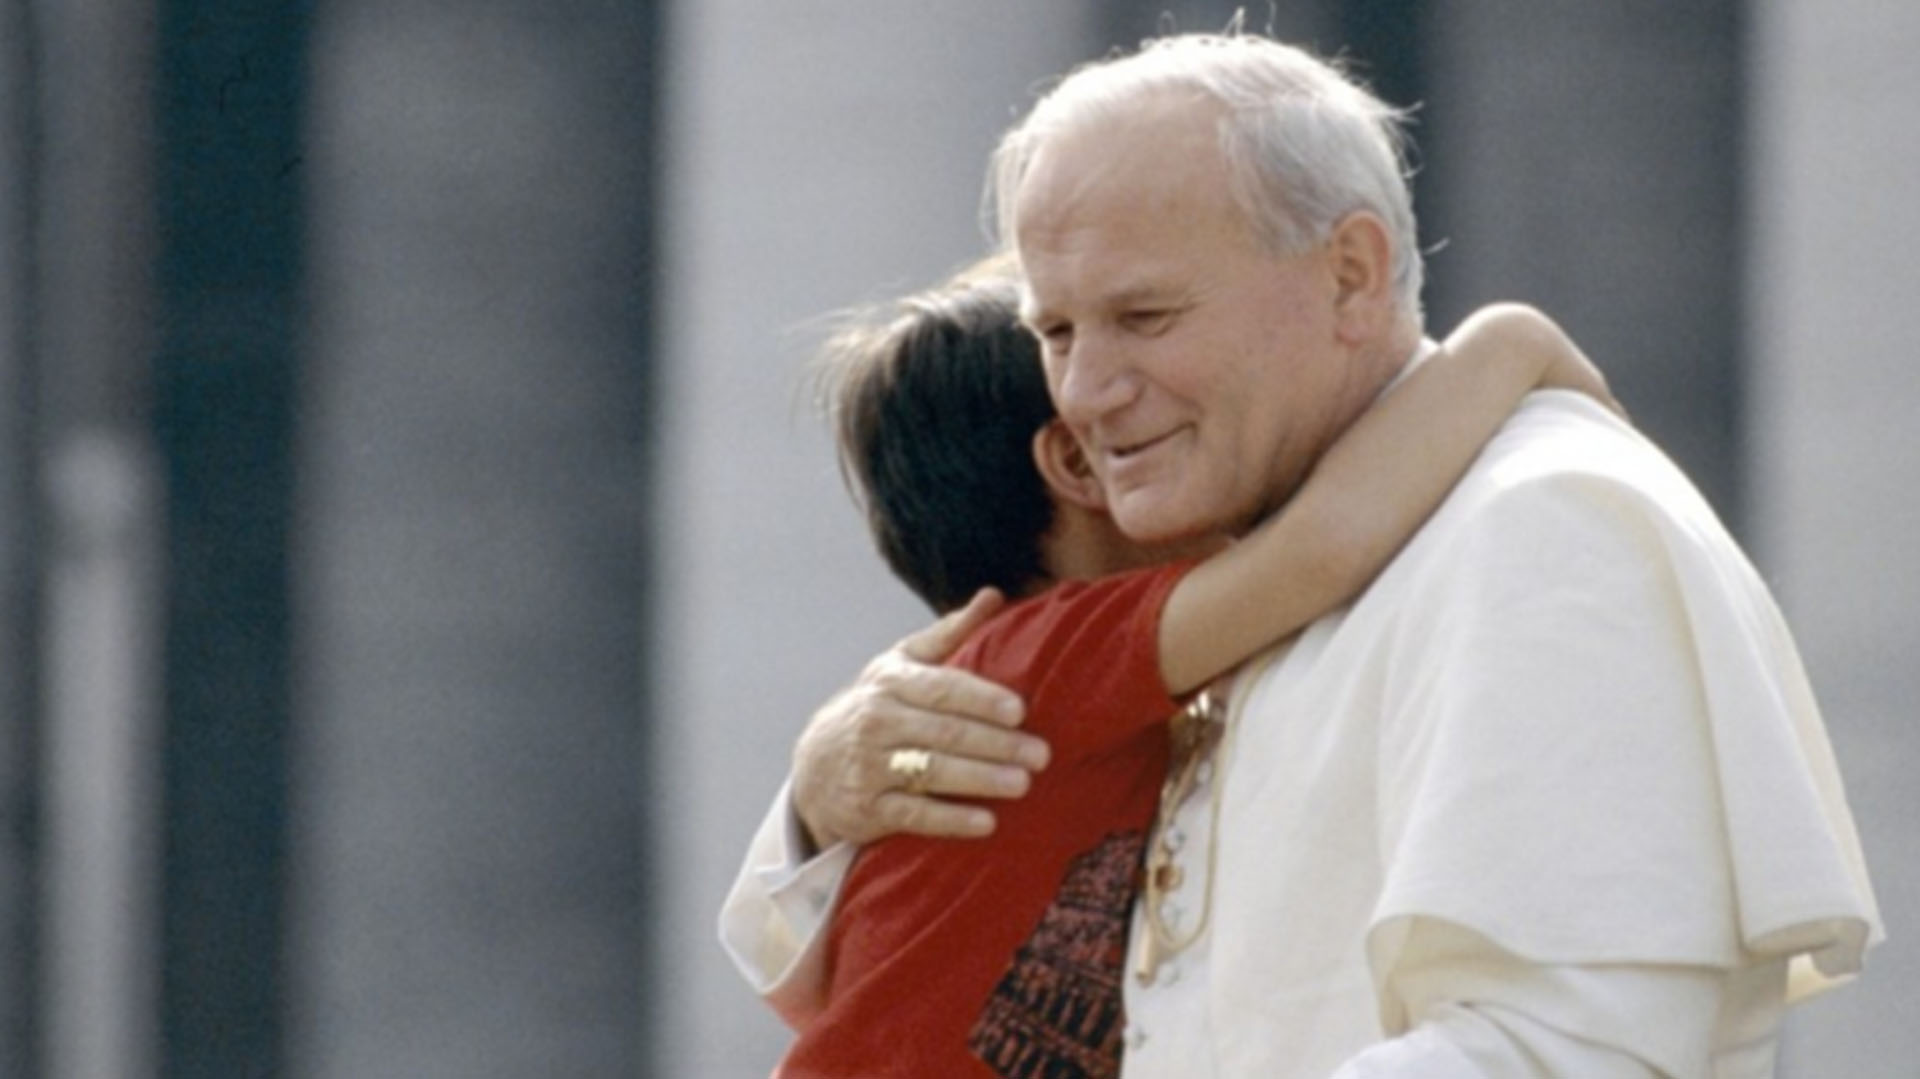 En 2003, Juan Pablo II apelaba al "derecho internacional", a "la solidaridad entre los Estados" y "al ejercicio noble de la diplomacia" como "medios dignos del hombre y de las Naciones" para resolver los conflictos